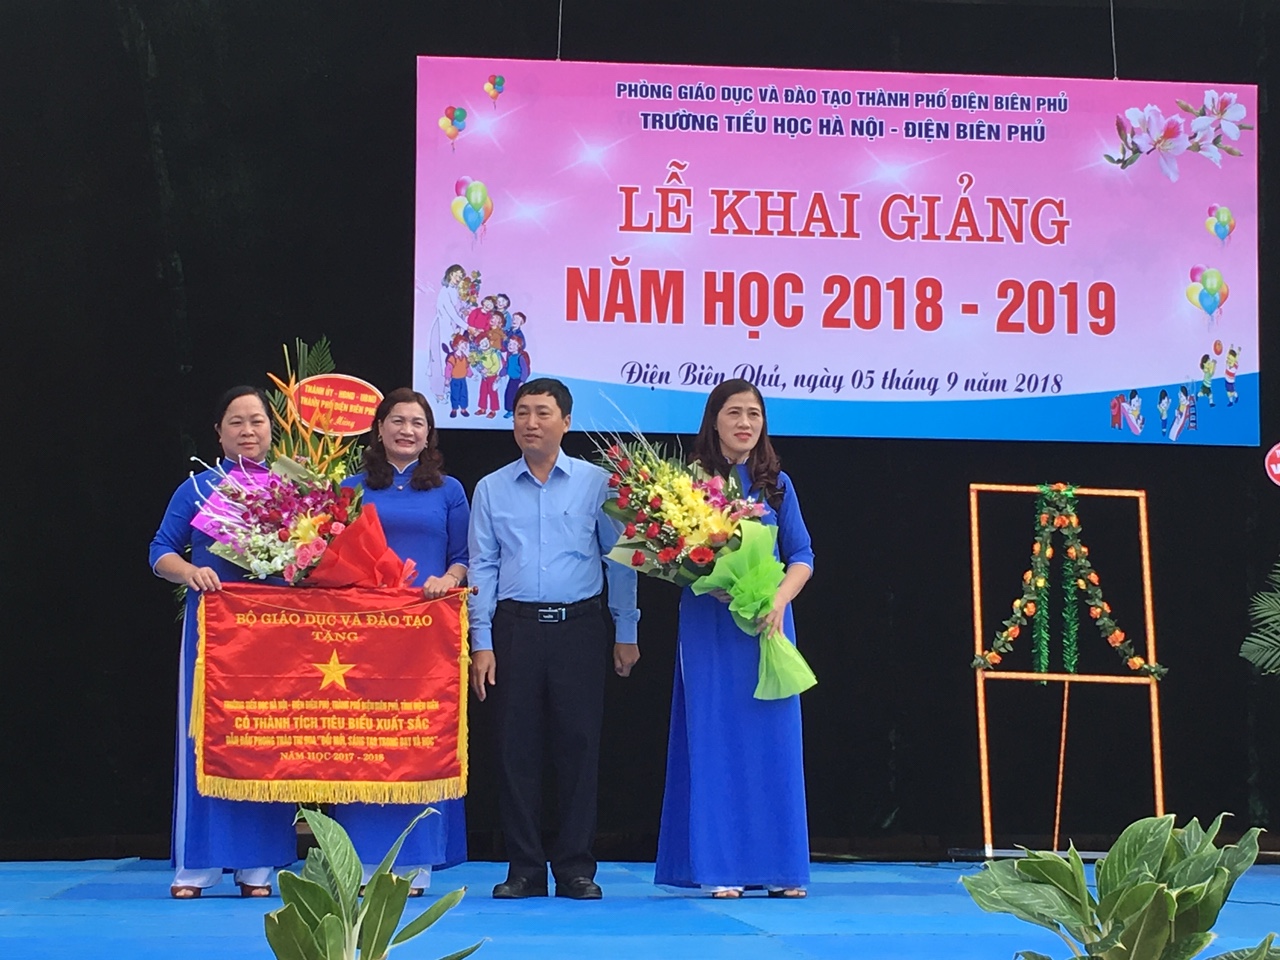 Trường Tiểu học Hà Nội -  Điện Biên Phủ tổ chức khai giảng năm học mới 2018 - 2019